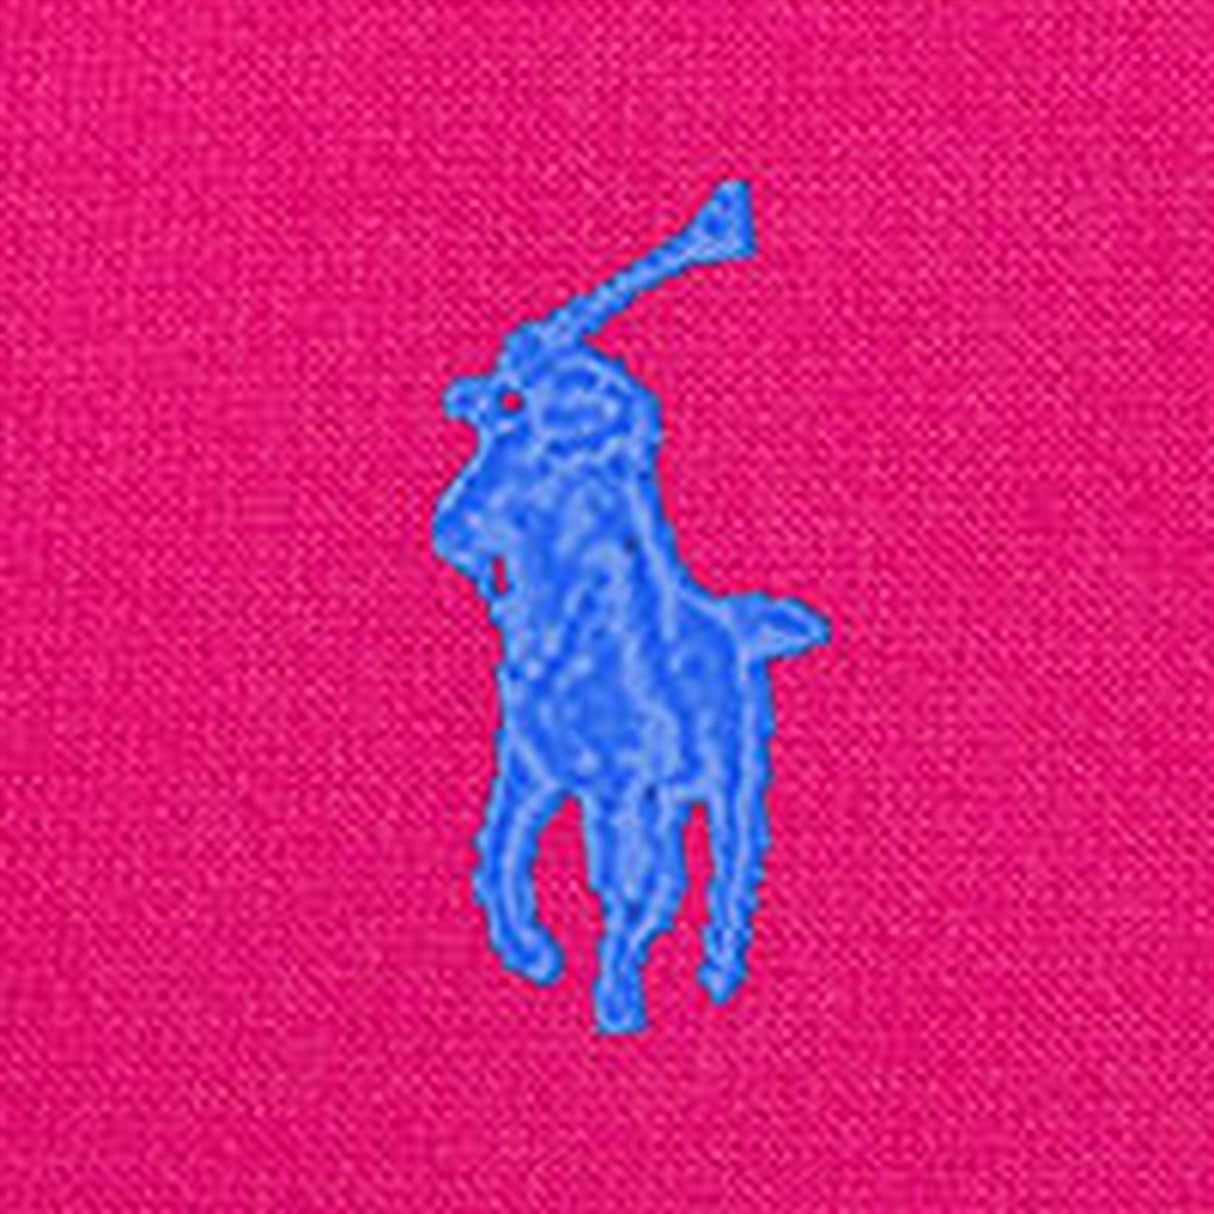 Polo Ralph Lauren Girls Dress Bright Pink W/ Blue 3